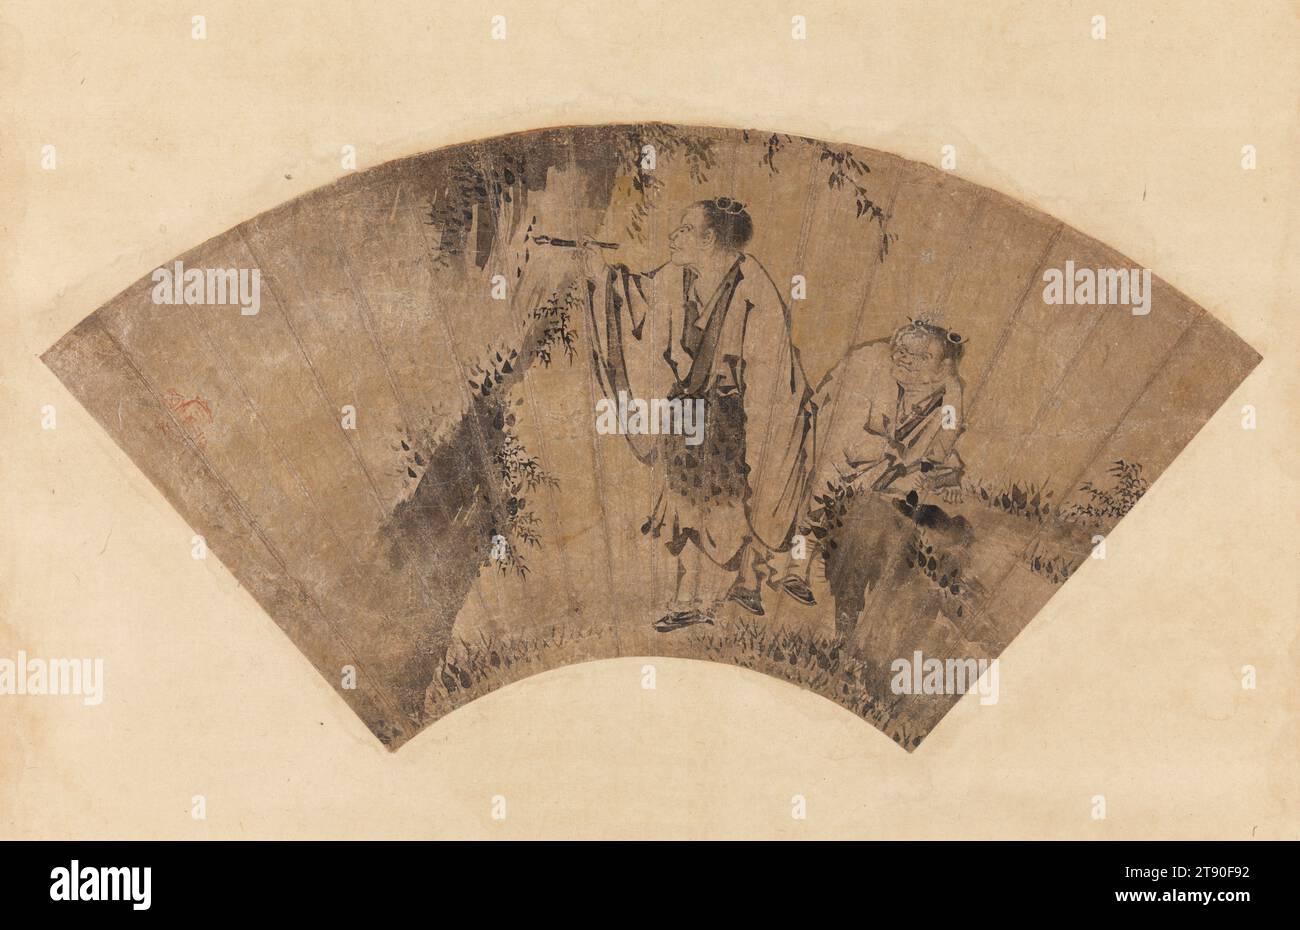 Hanshan und Shide, Mitte des 16. Jahrhunderts, zugeschrieben Kano Yukinobu, Japanisch, um 1513 - 1575, 8 3/4 x 17 1/8 cm. (22,23 x 43,5 cm) (Bild)42 11/16 x 20 5/8 Zoll (108,43 x 52,39 cm) (Montierung, ohne Rolle), Tinte und Gold auf Glimmerpapier, Japan, 16. Jahrhundert, Kanzan (chinesisch: Hanshan) und Jittoku (CH.: Shide), ein Paar chinesischer Mönchsdichter aus dem 9. Jahrhundert, erscheinen fast immer zusammen in der japanischen Malerei. In dieser Komposition – basierend auf einem Werk des chinesischen Malers Muqi Fachang aus dem 13. Jahrhundert, das später zu einem Stockbild für japanische Maler wurde, die mit dem Kano-Haus verbunden waren – wird Jittoku dargestellt Stockfoto